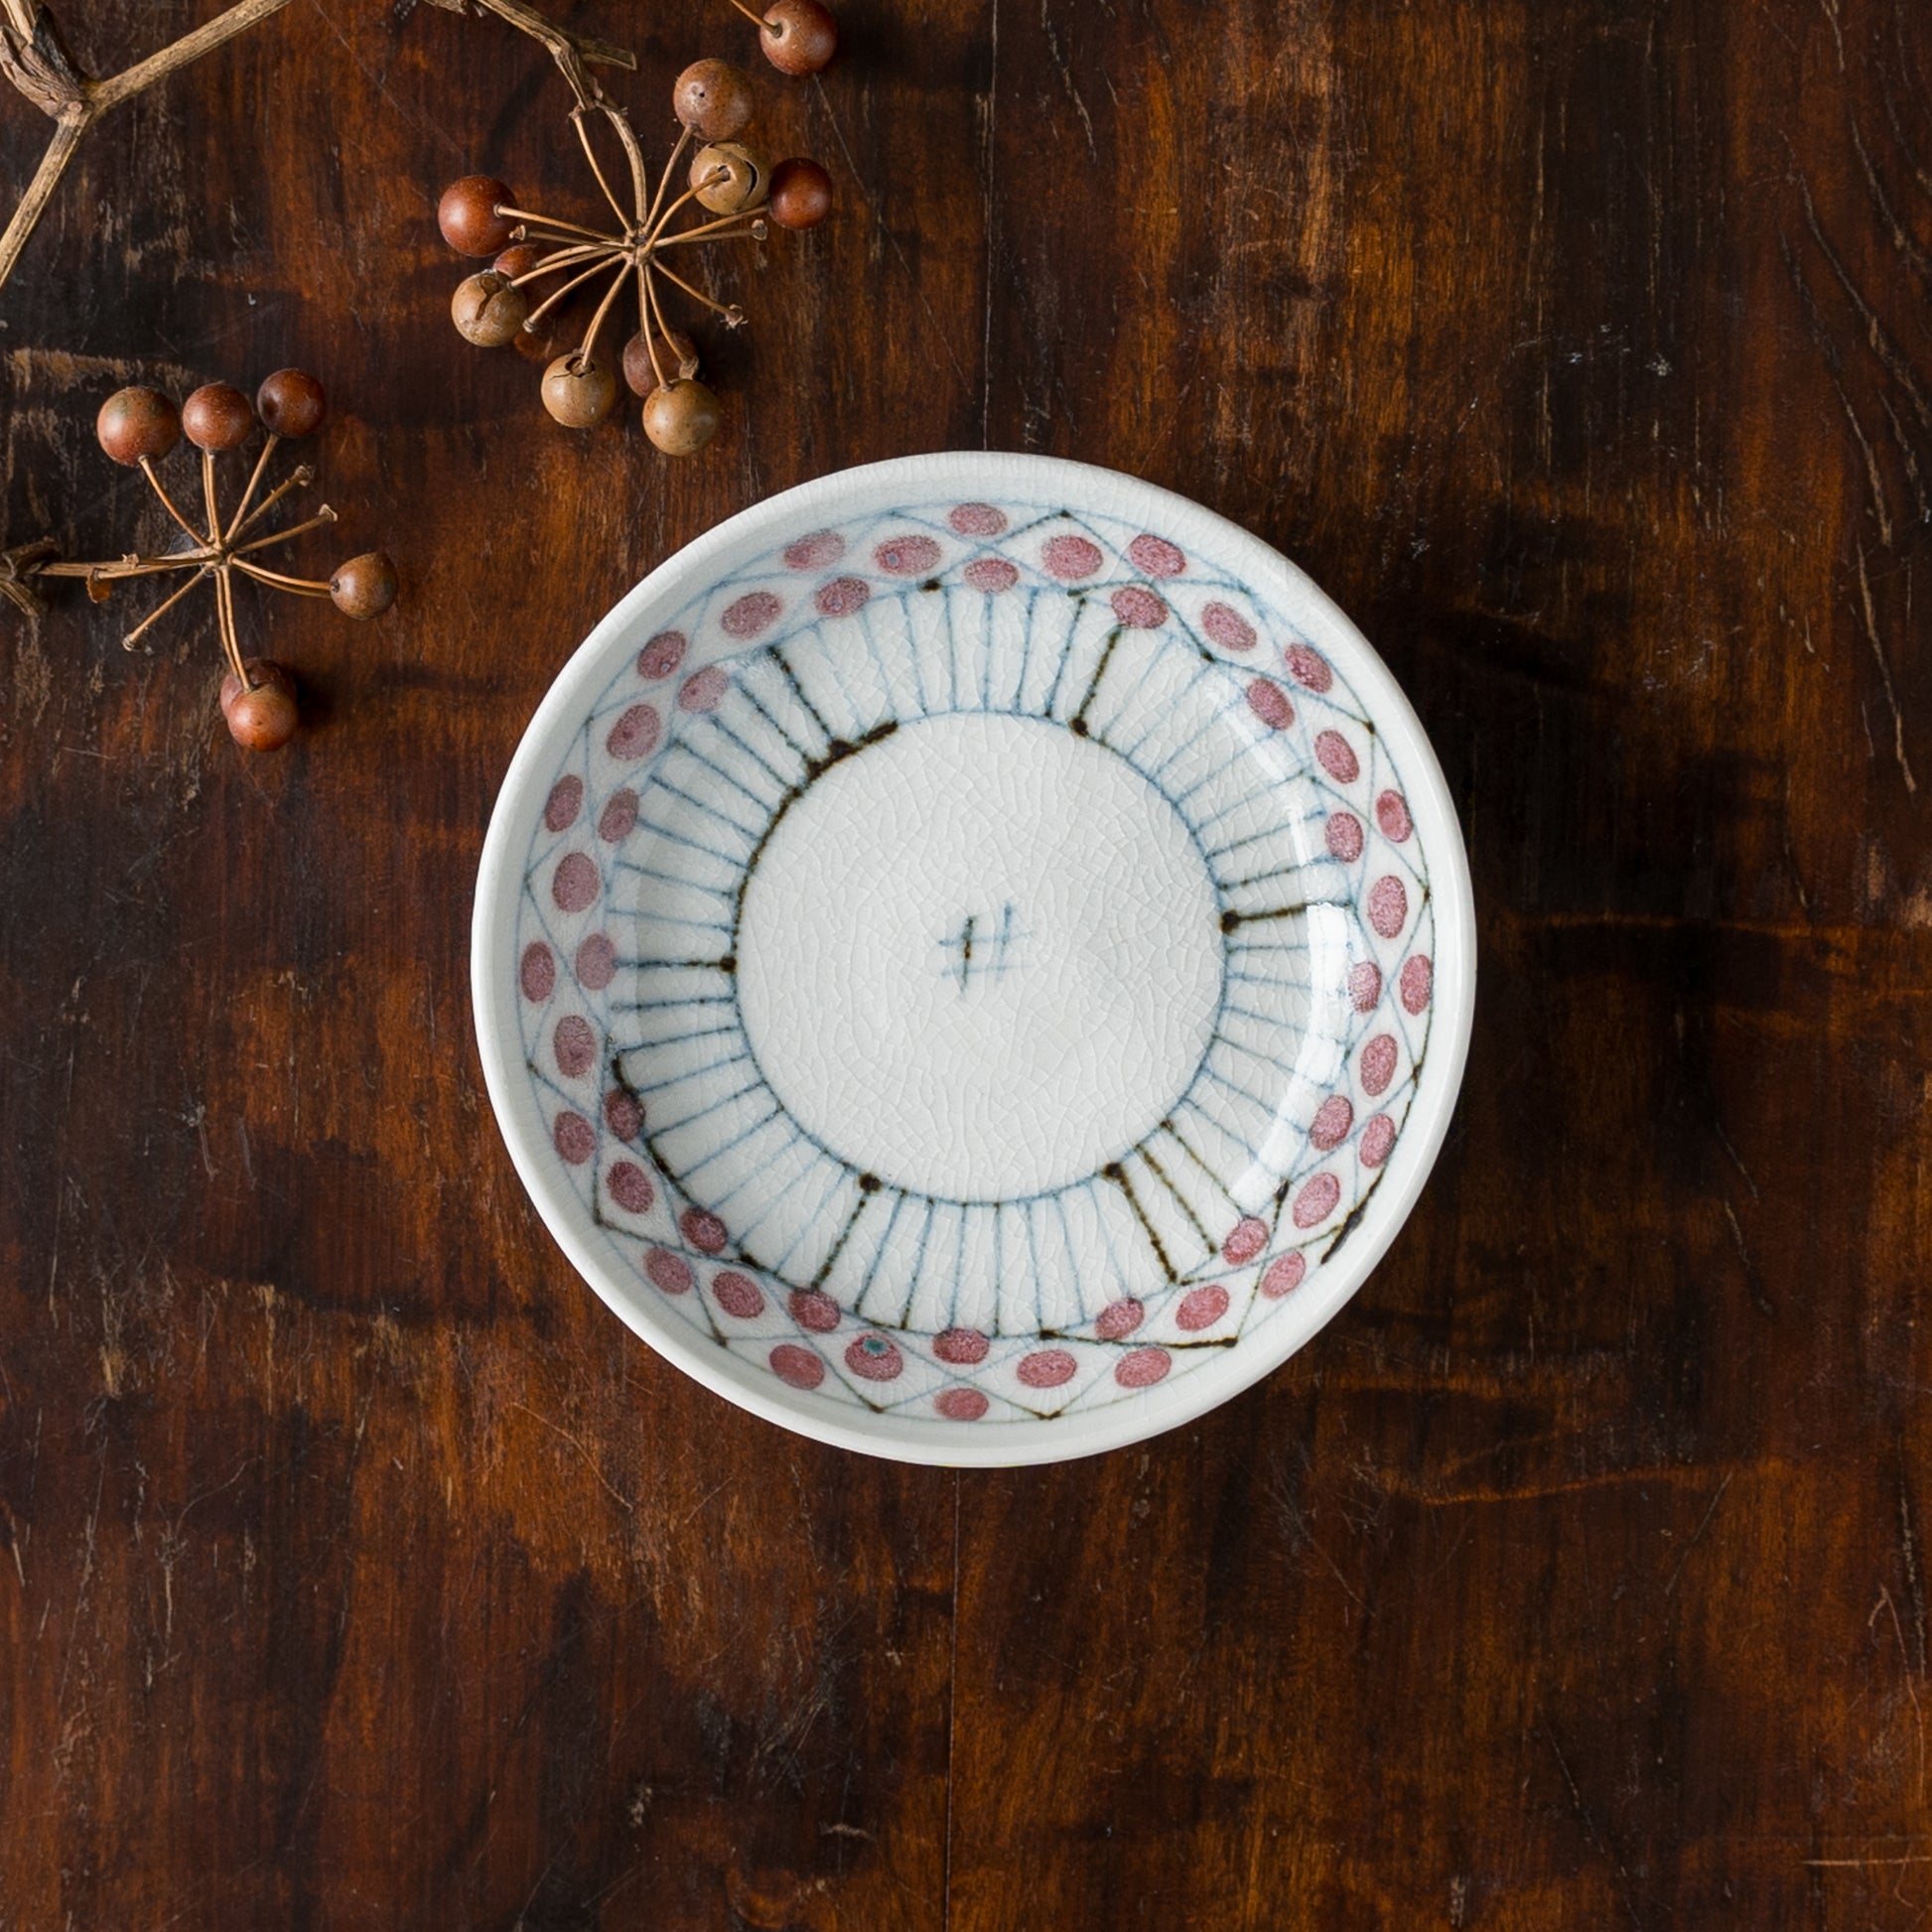 花垣文がほっこり可愛い砥部焼陶彩窯の3.5寸皿